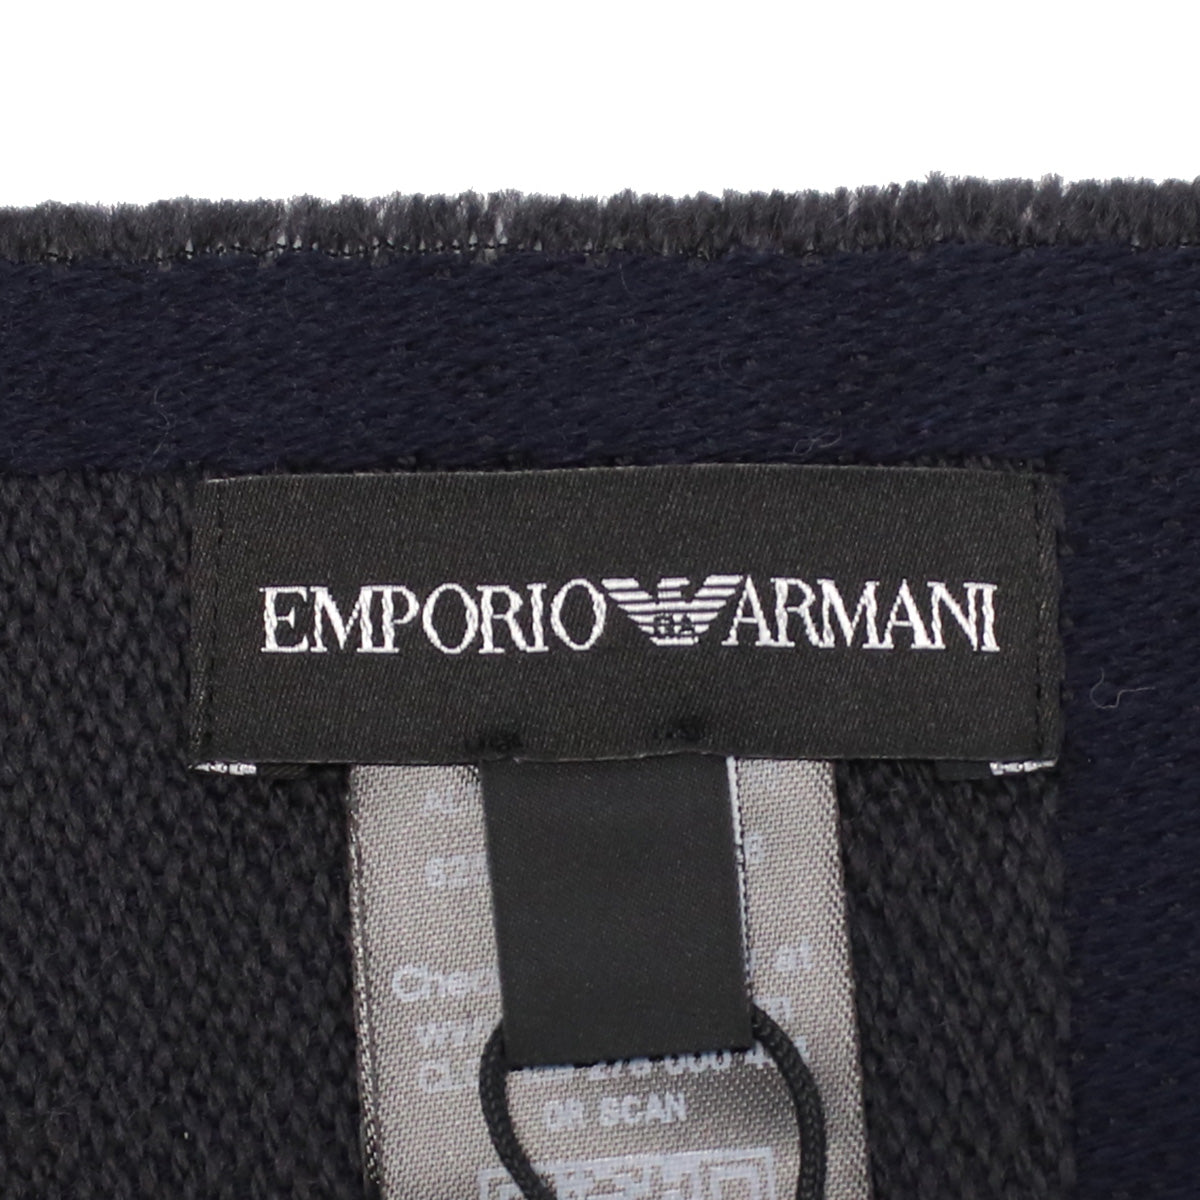 Emporio Armani エンポリオ・アルマーニ 625009 マフラー NIGHT BLUE ネイビー系 メンズ